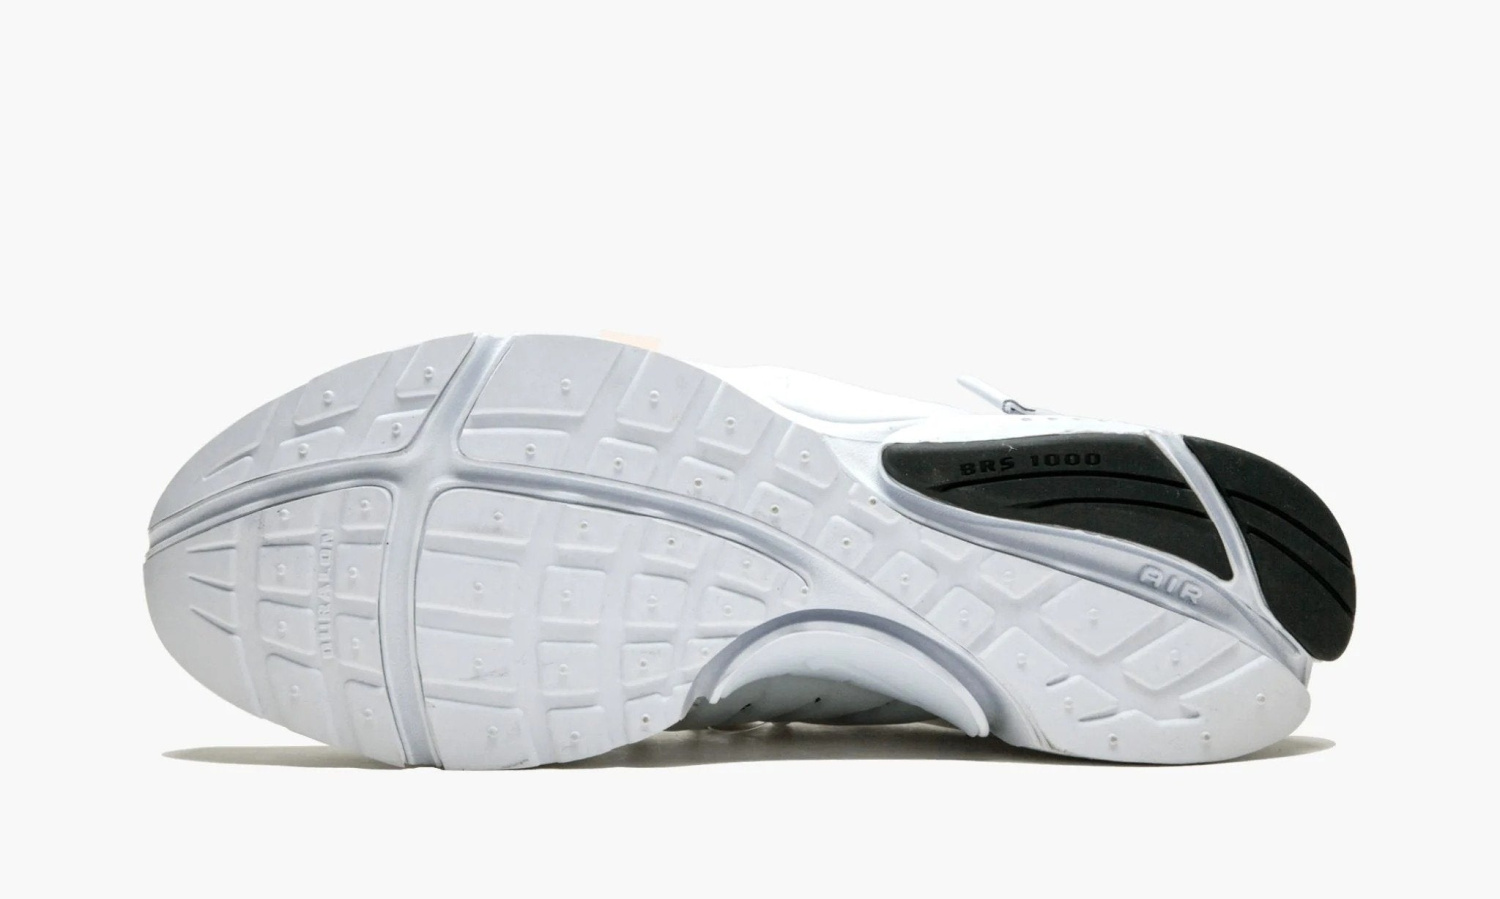 фото The 10 : Nike Air Presto “Off-White Polar Opposites White” (Nike Air Presto)-AA3830100